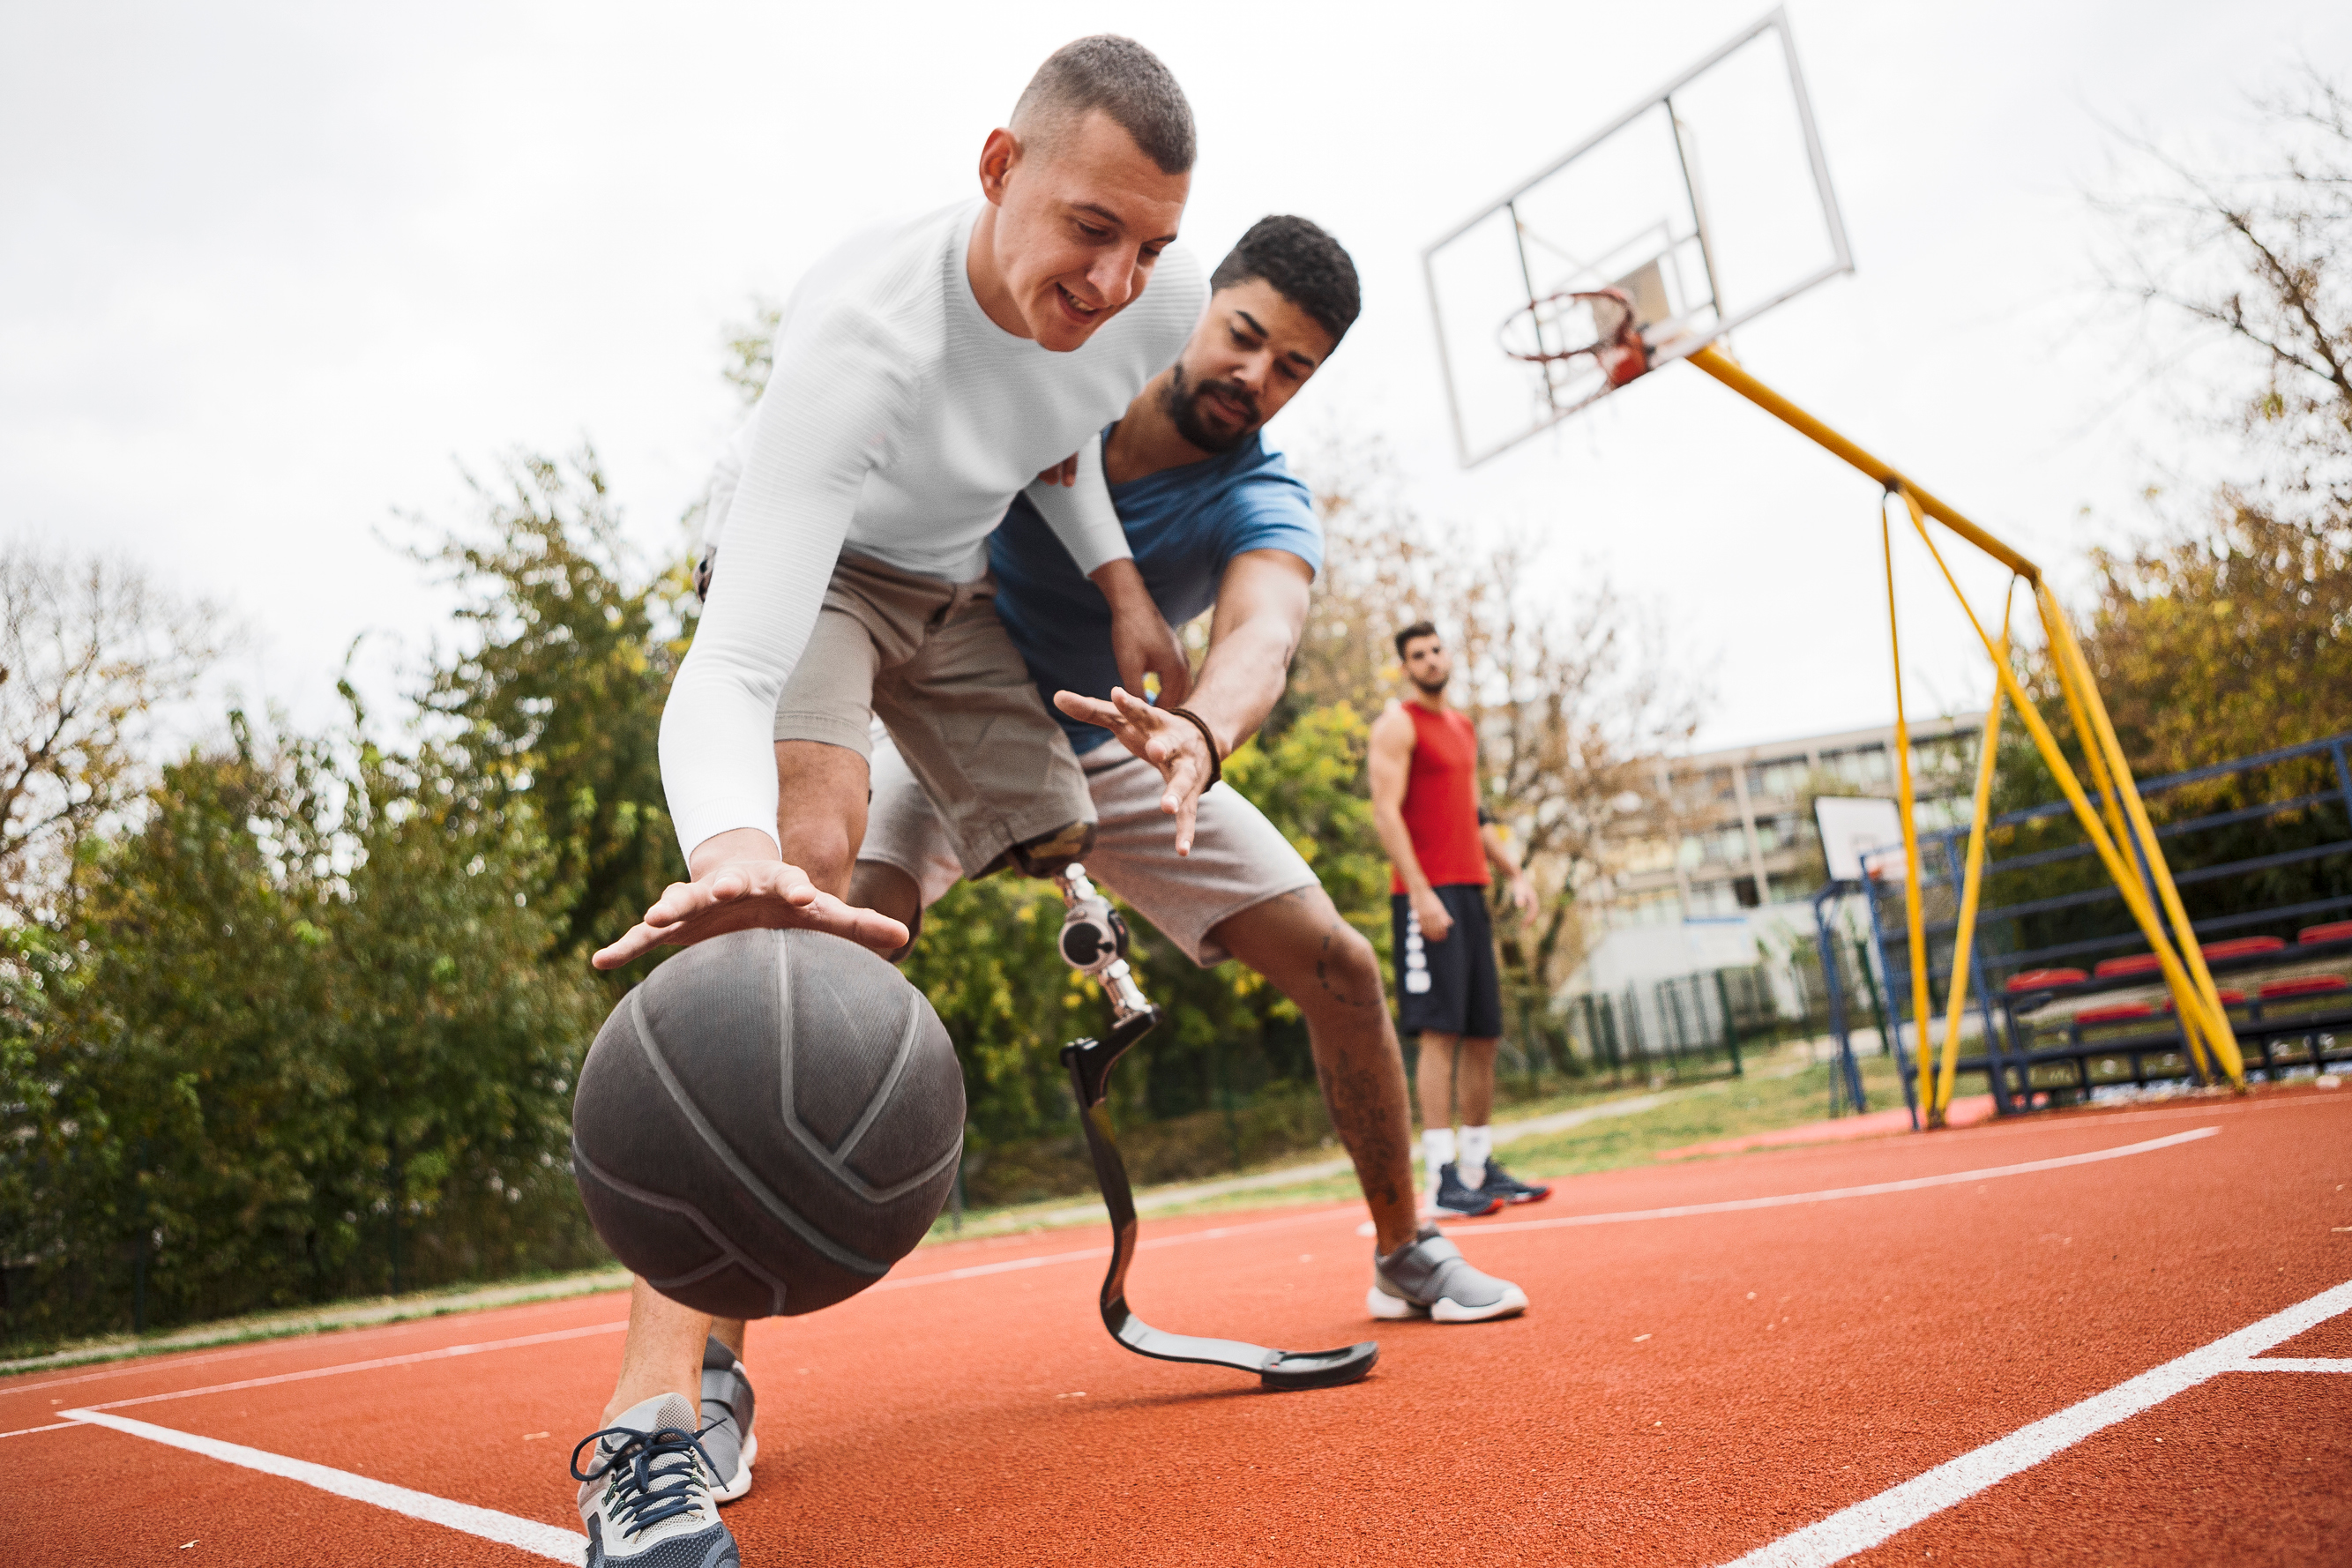 Três desportistas masculinos a jogar basquetebol, um deles tem deficiência motora num dos membros inferiores.